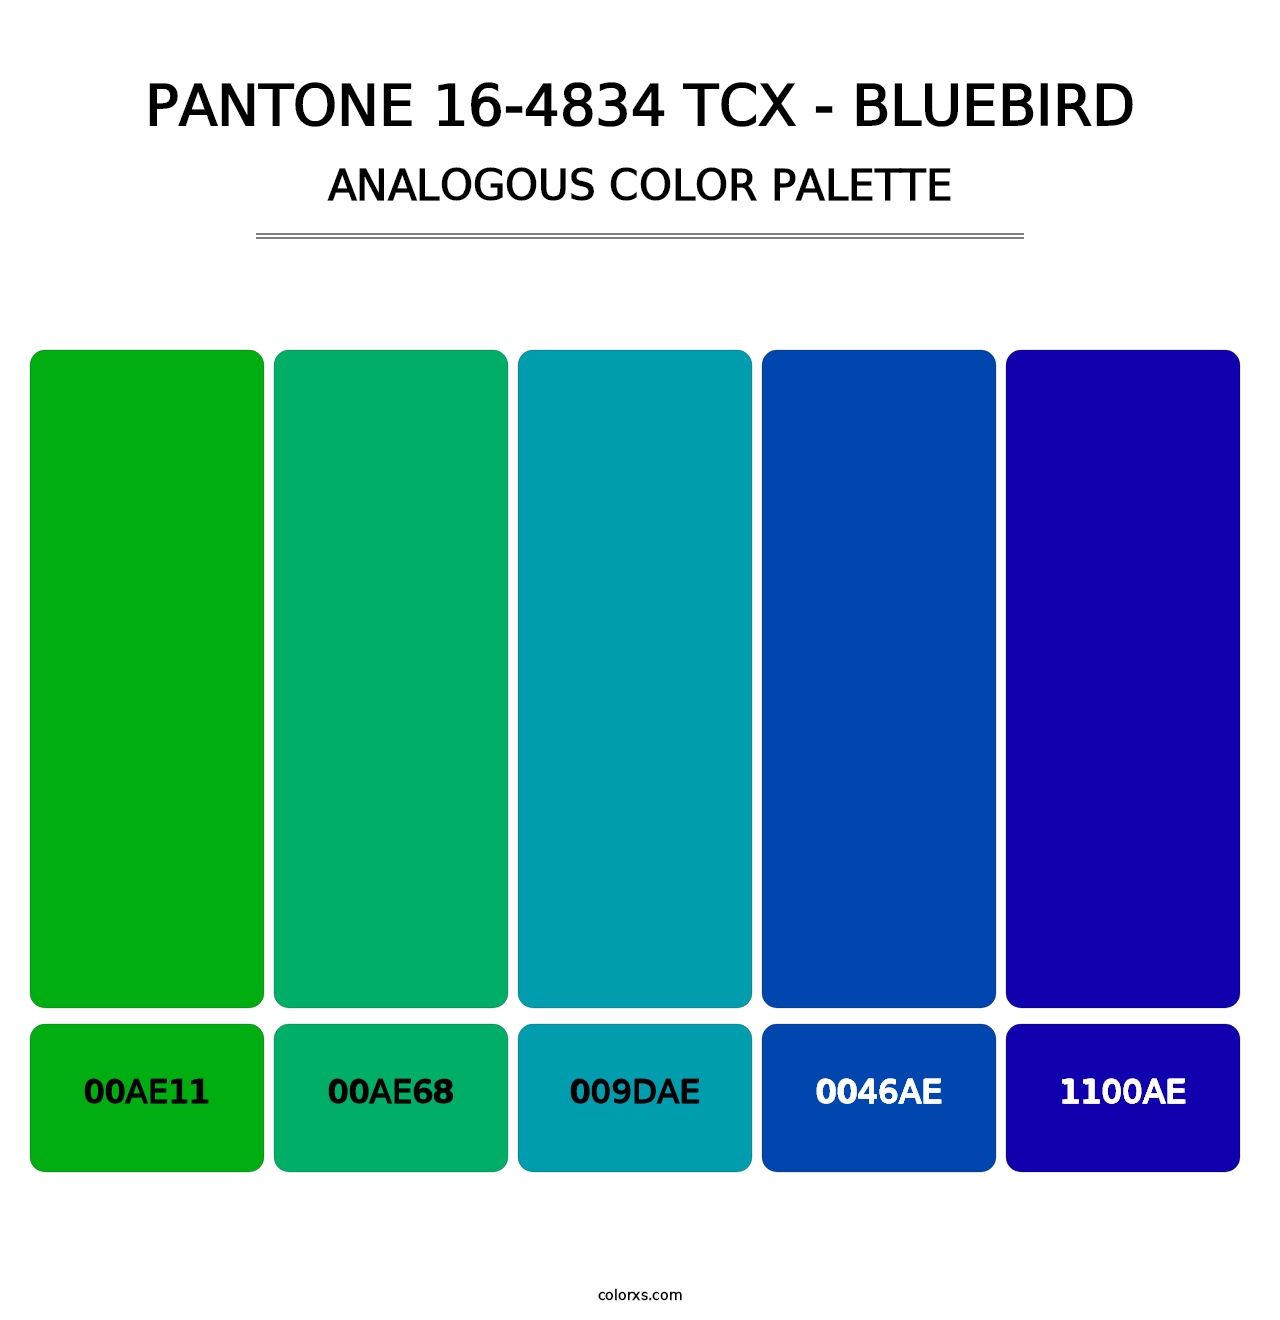 PANTONE 16-4834 TCX - Bluebird - Analogous Color Palette